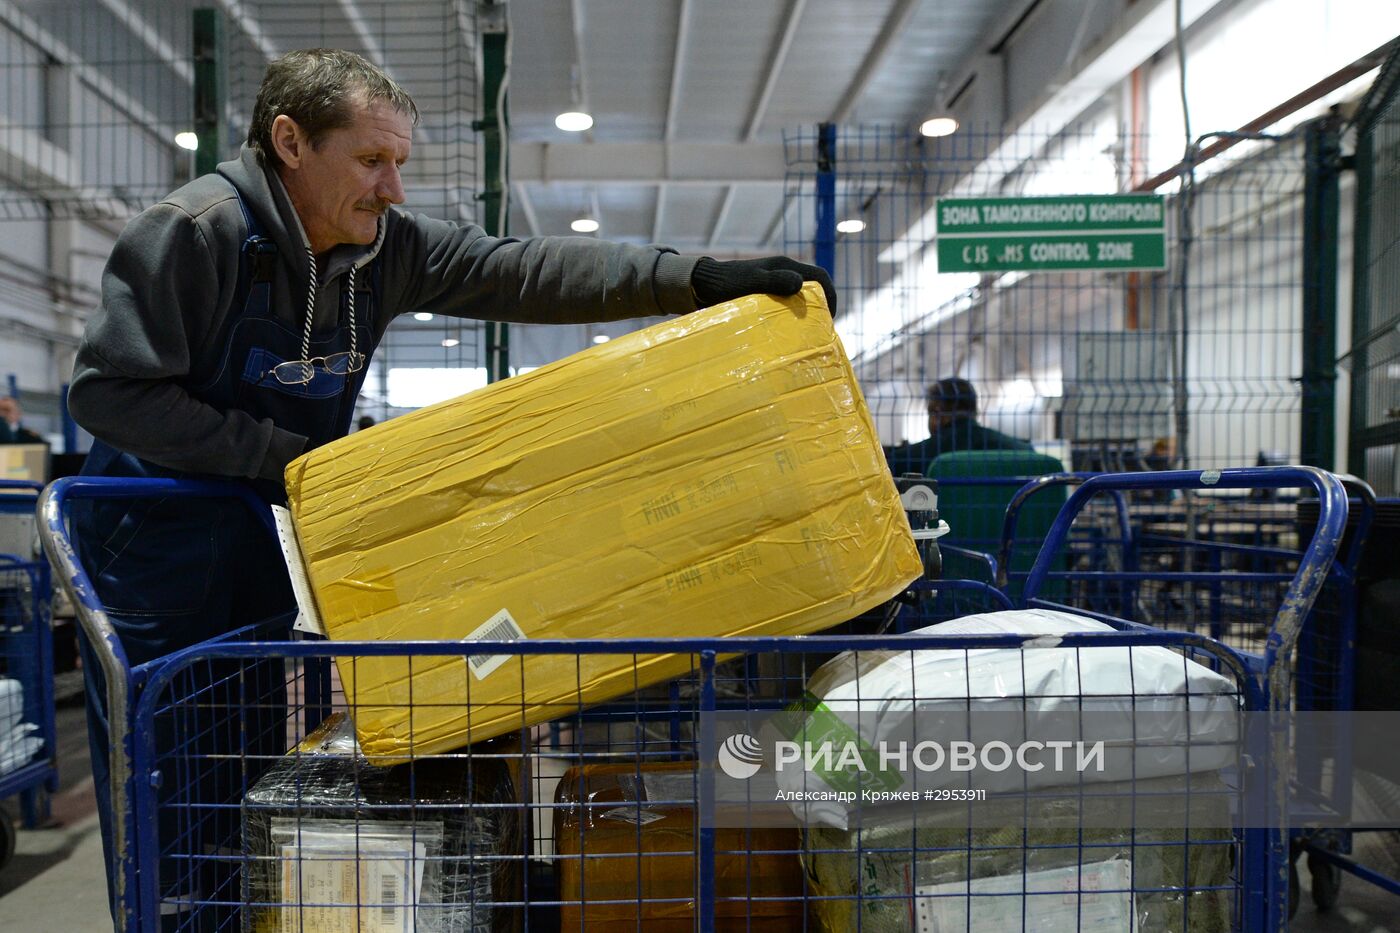 Открытие Новосибирского почтового таможенного поста